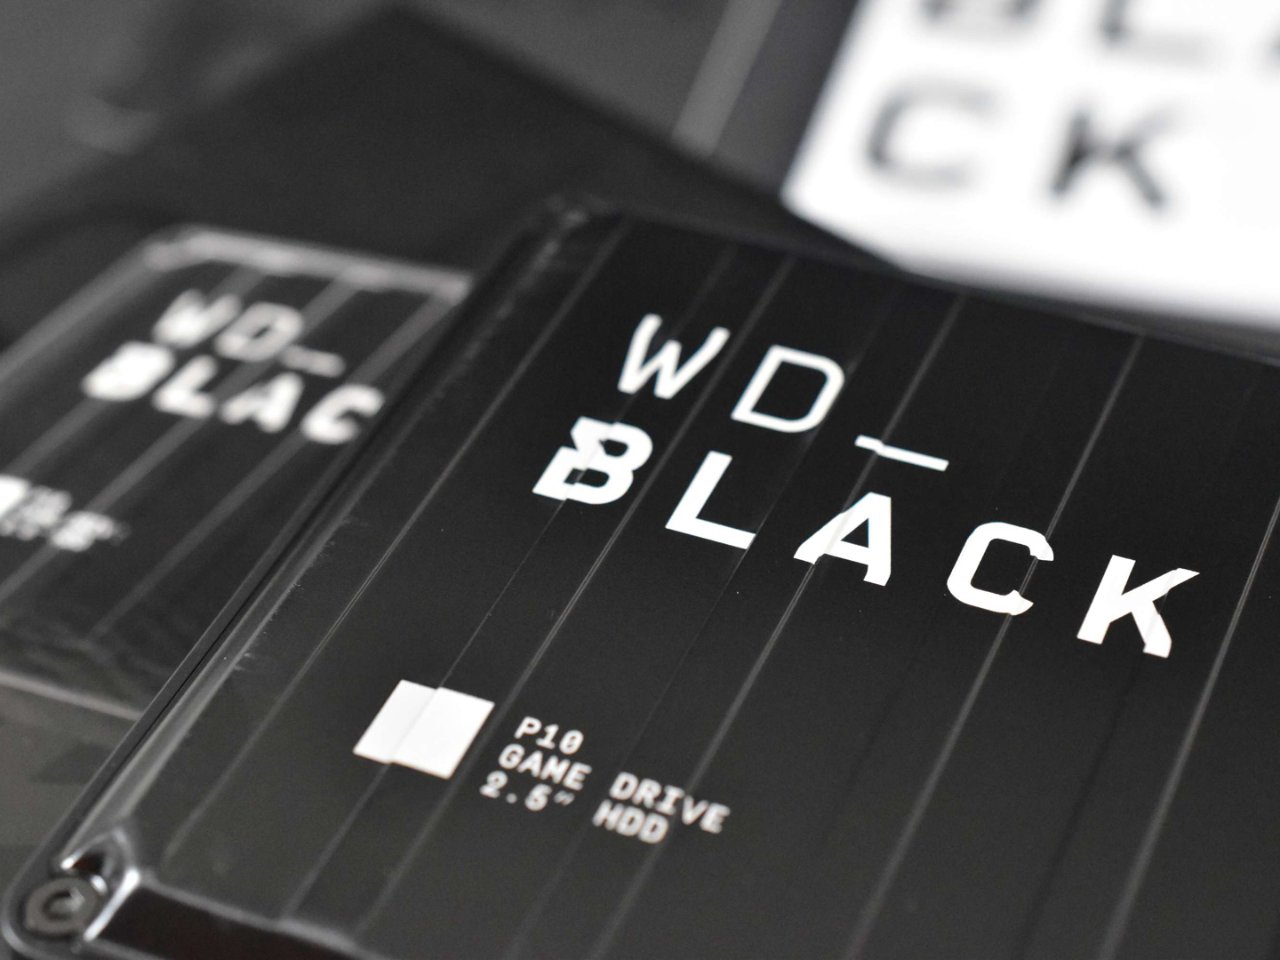 西部数据移动硬盘WD_BLACK P10...